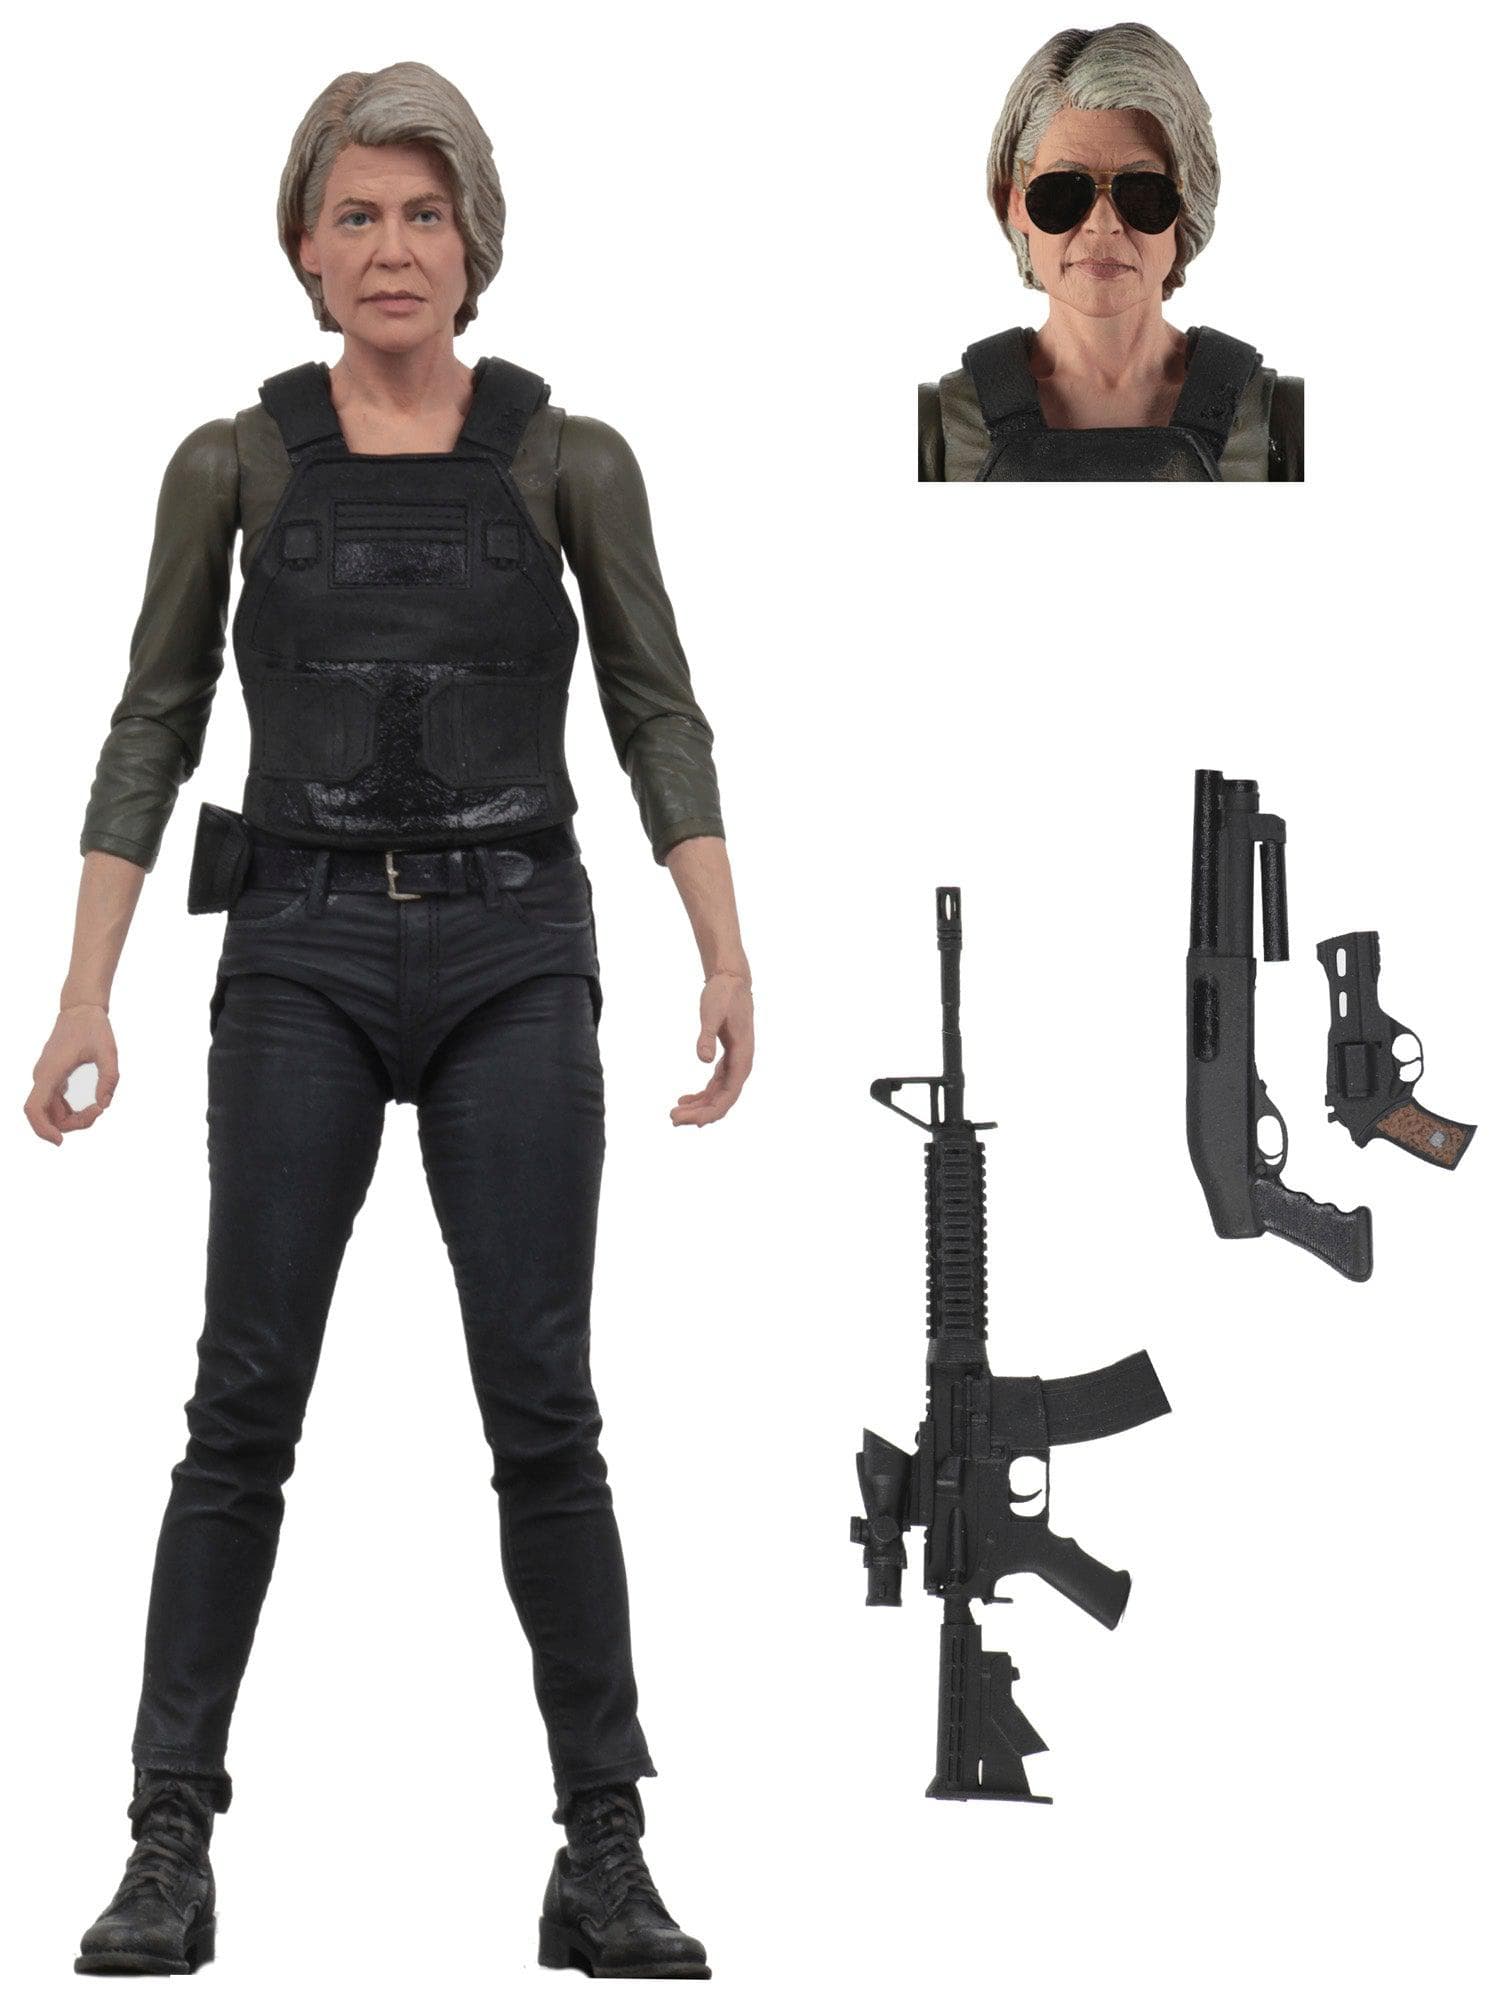 NECA - Terminator Dark Fate (2019) - 7" Figure - Sarah Connor - costumes.com